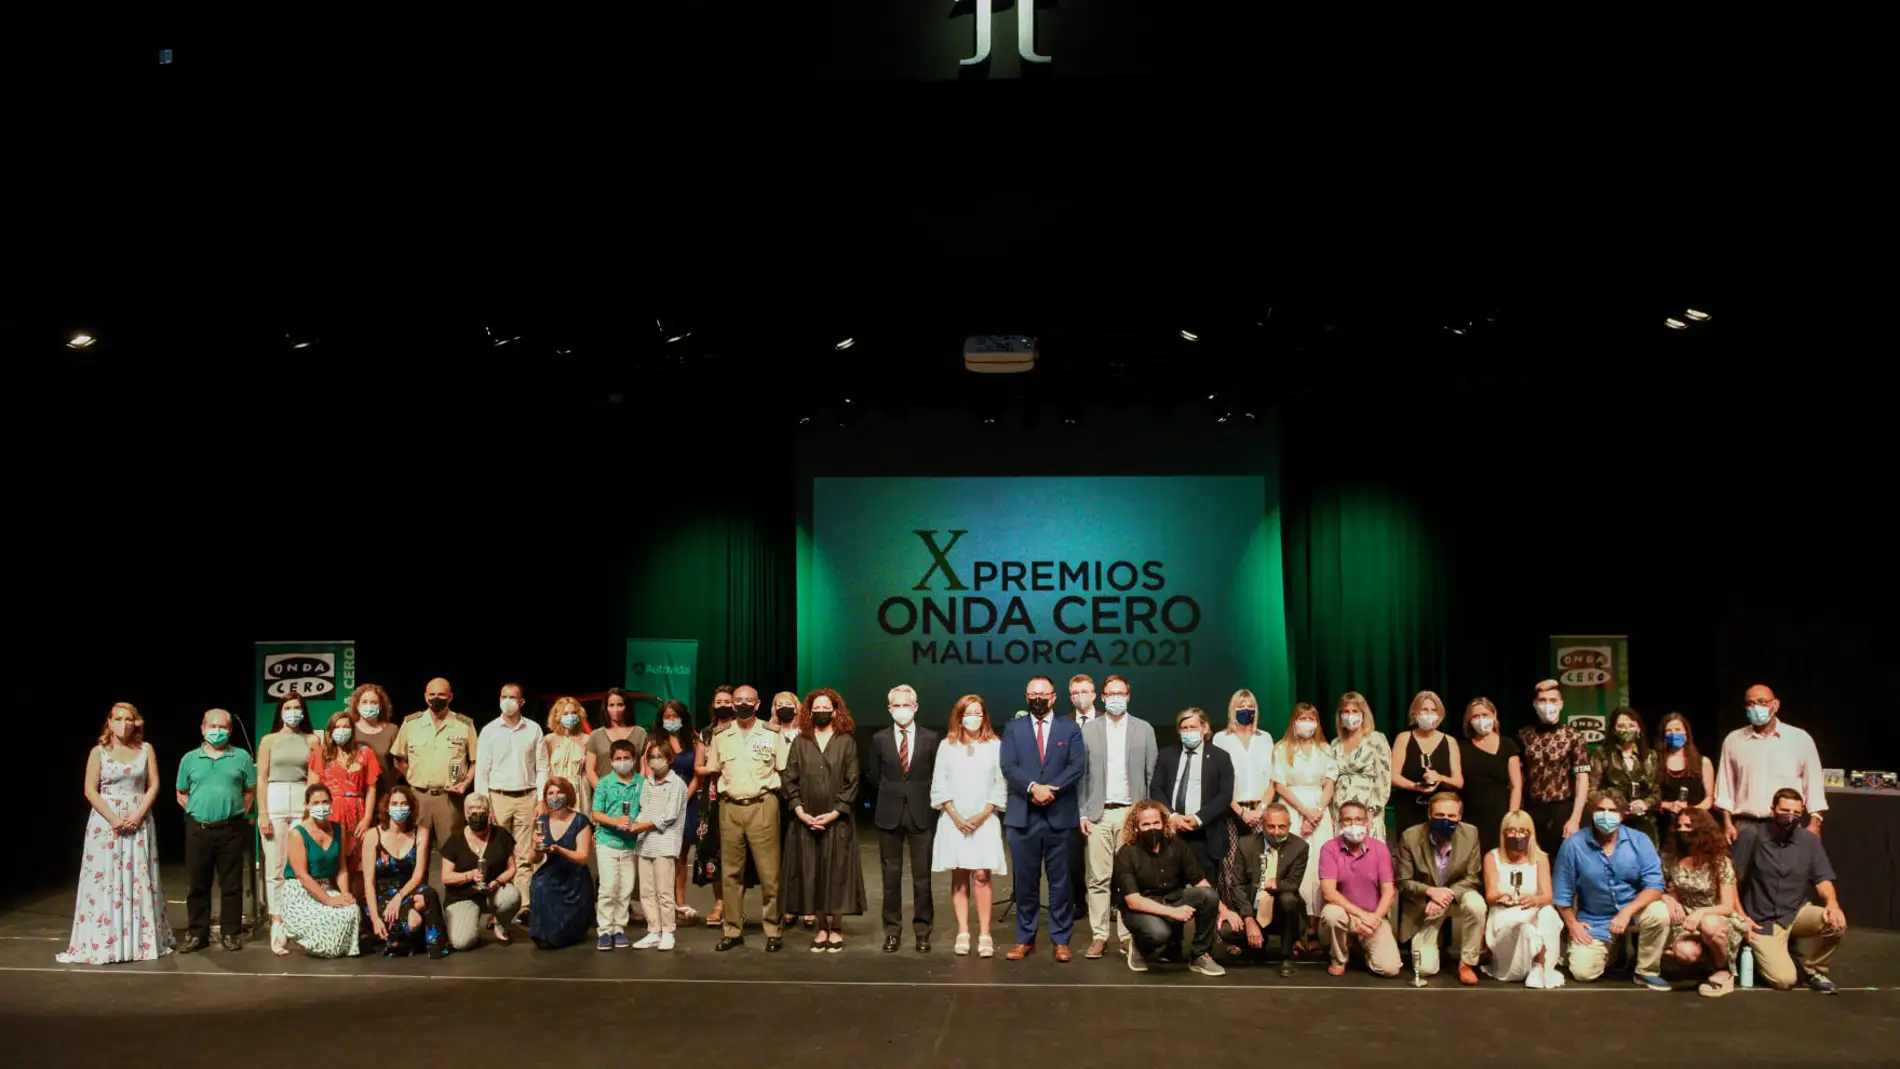 Fotografía de grupo de los galardonados en los X Premios Onda Cero Mallorca, celebrados en 2021 en el Trui Teatre de Palma